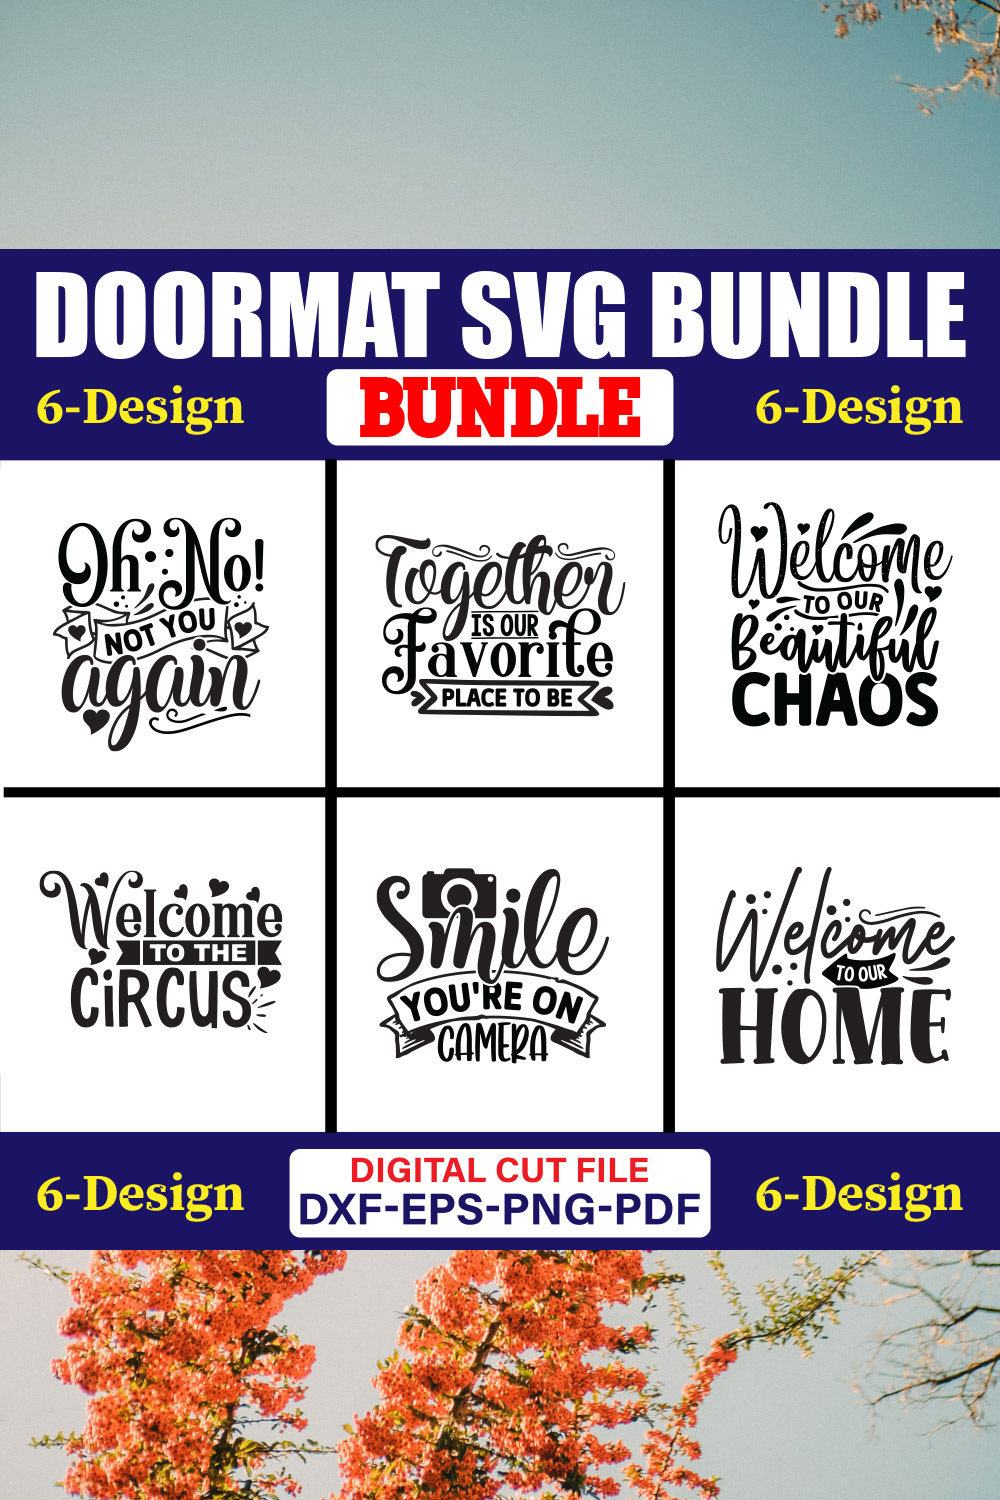 Doormat SVG T-shirt Design Bundle Vol-02 pinterest preview image.